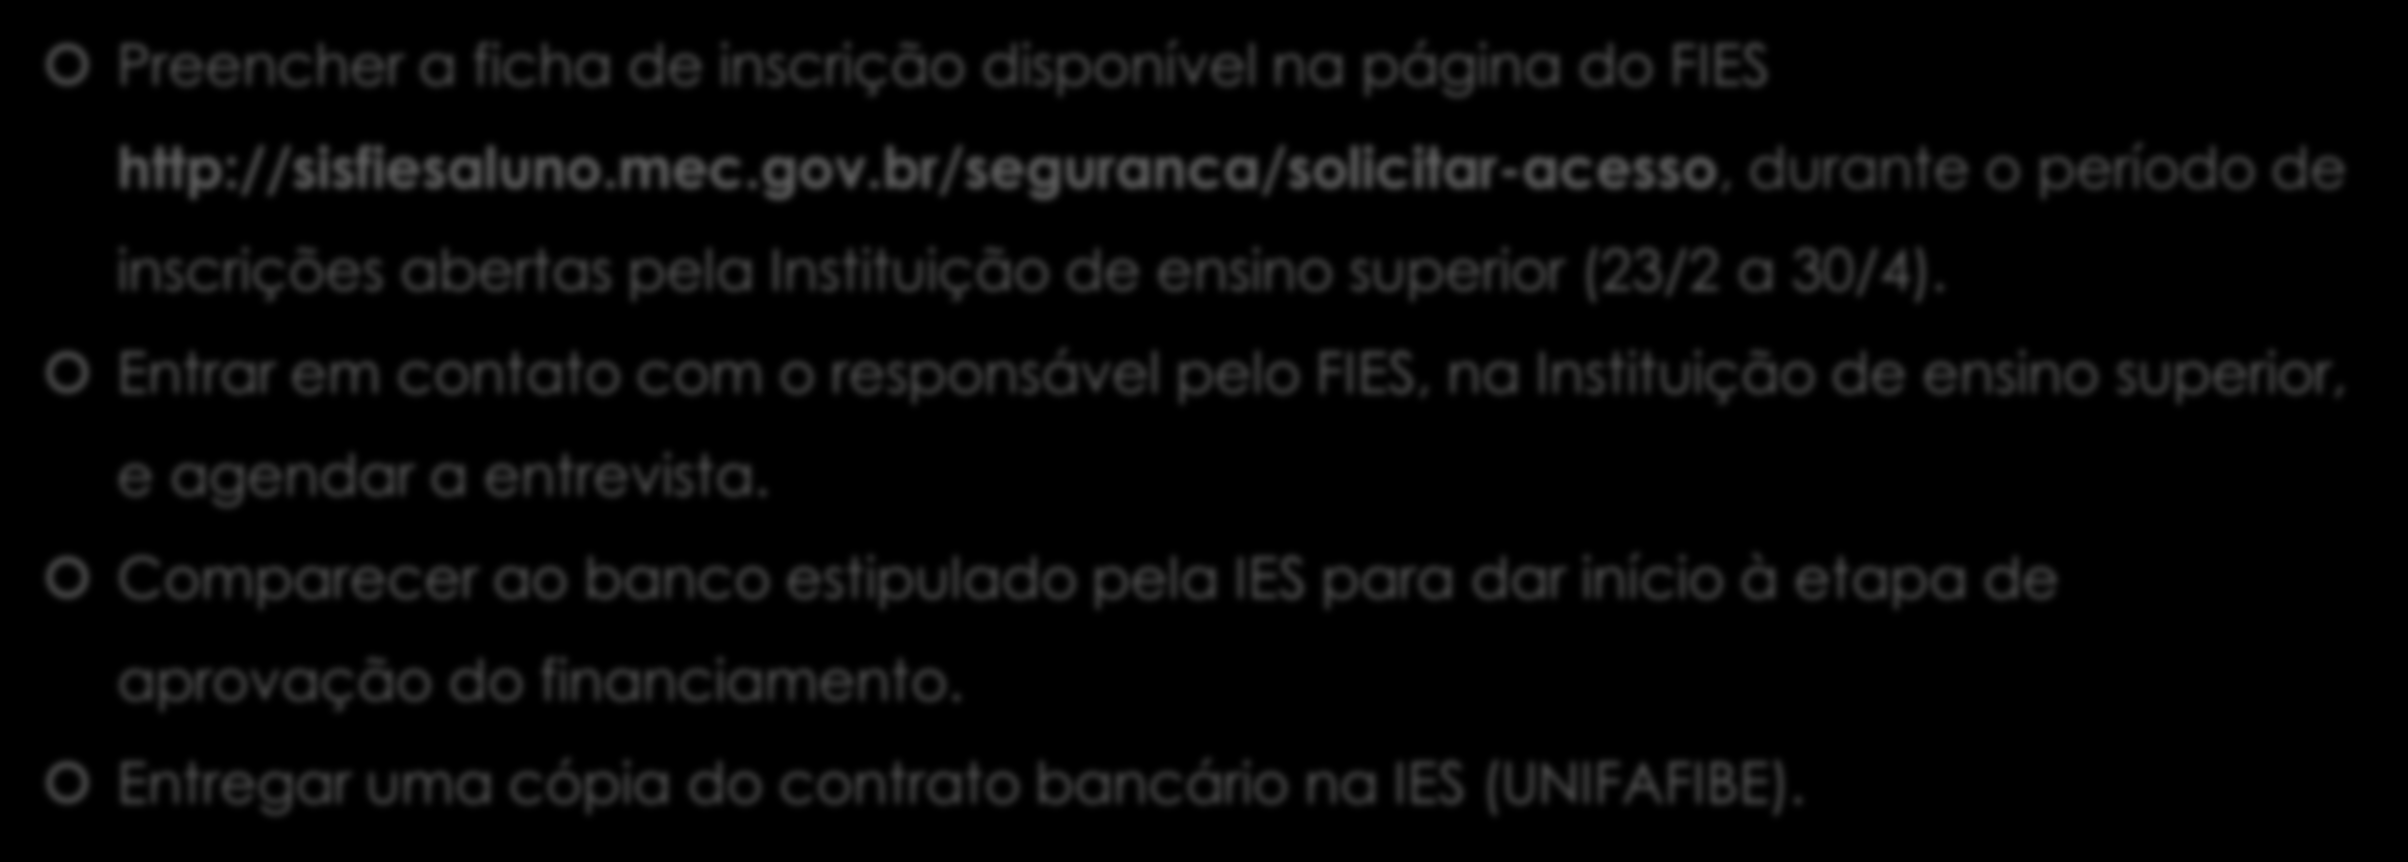 Como inscrever-se? Preencher a ficha de inscrição disponível na página do FIES http://sisfiesaluno.mec.gov.